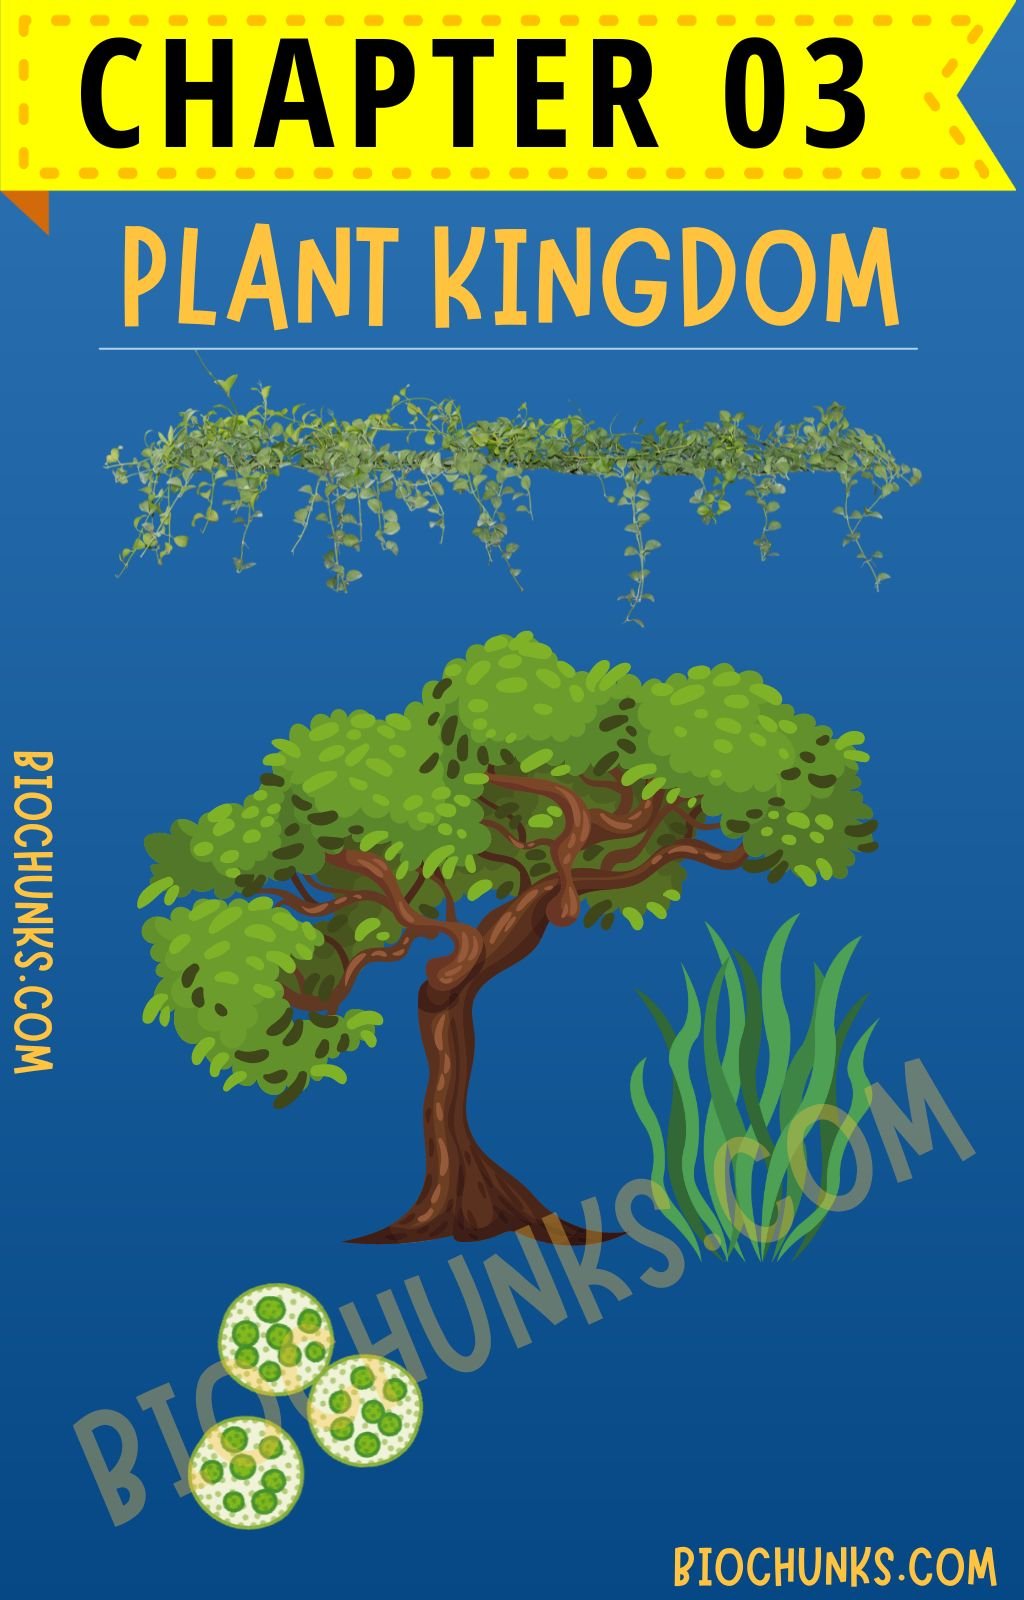 Plant Kingdom Chapter 03 Class 11th biochunks.com